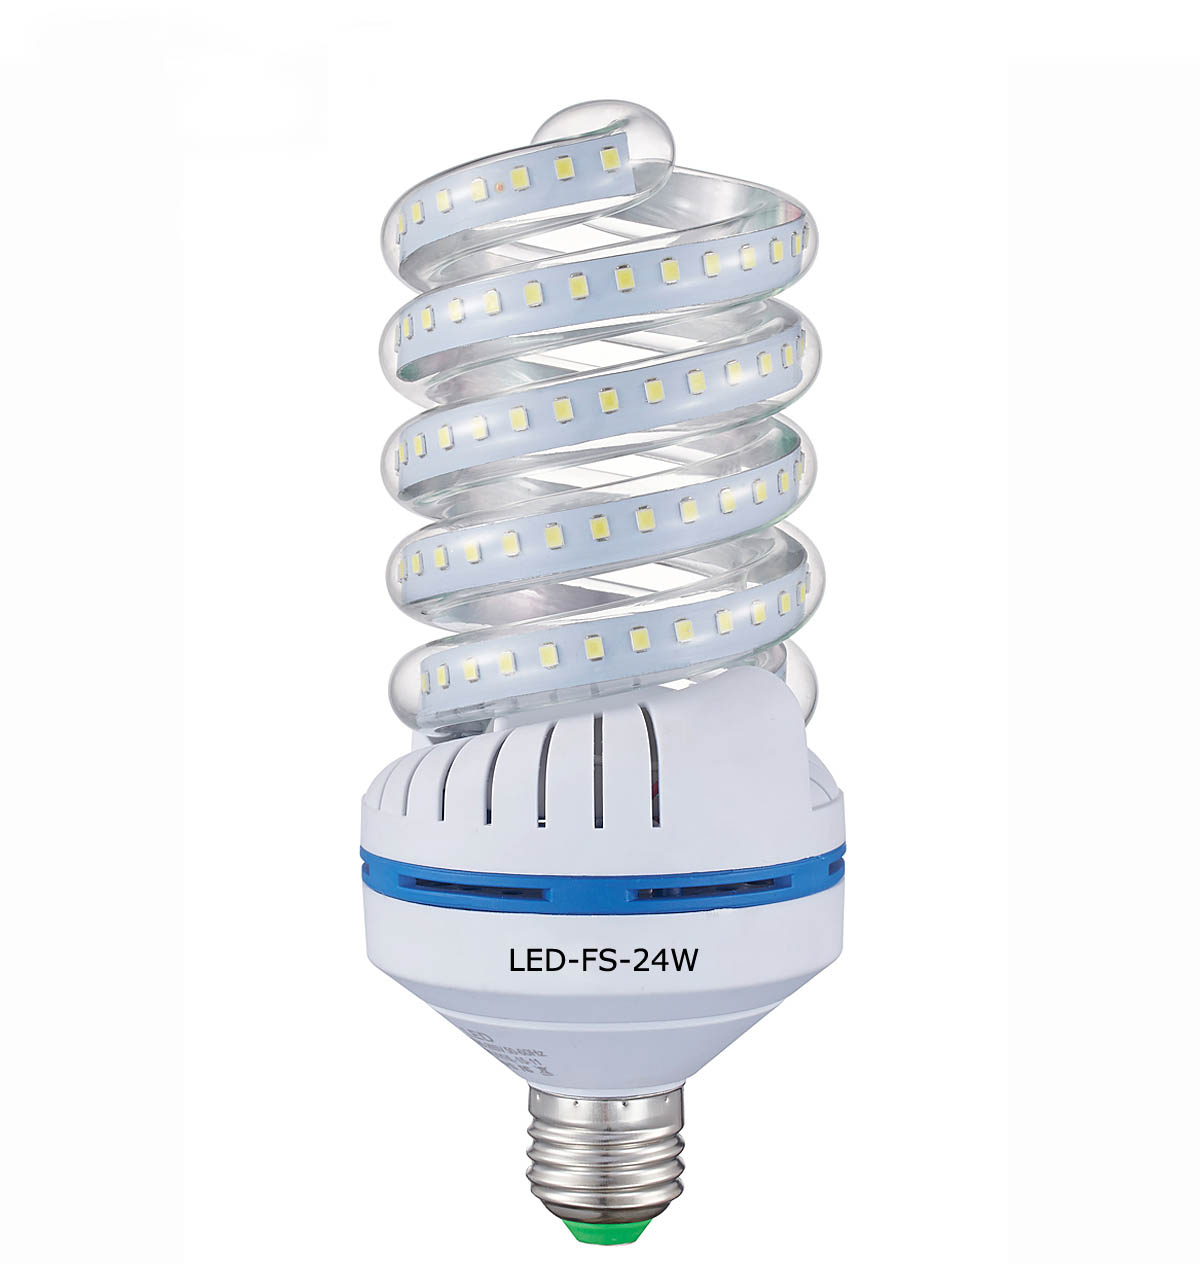 LED corn bulb 24W